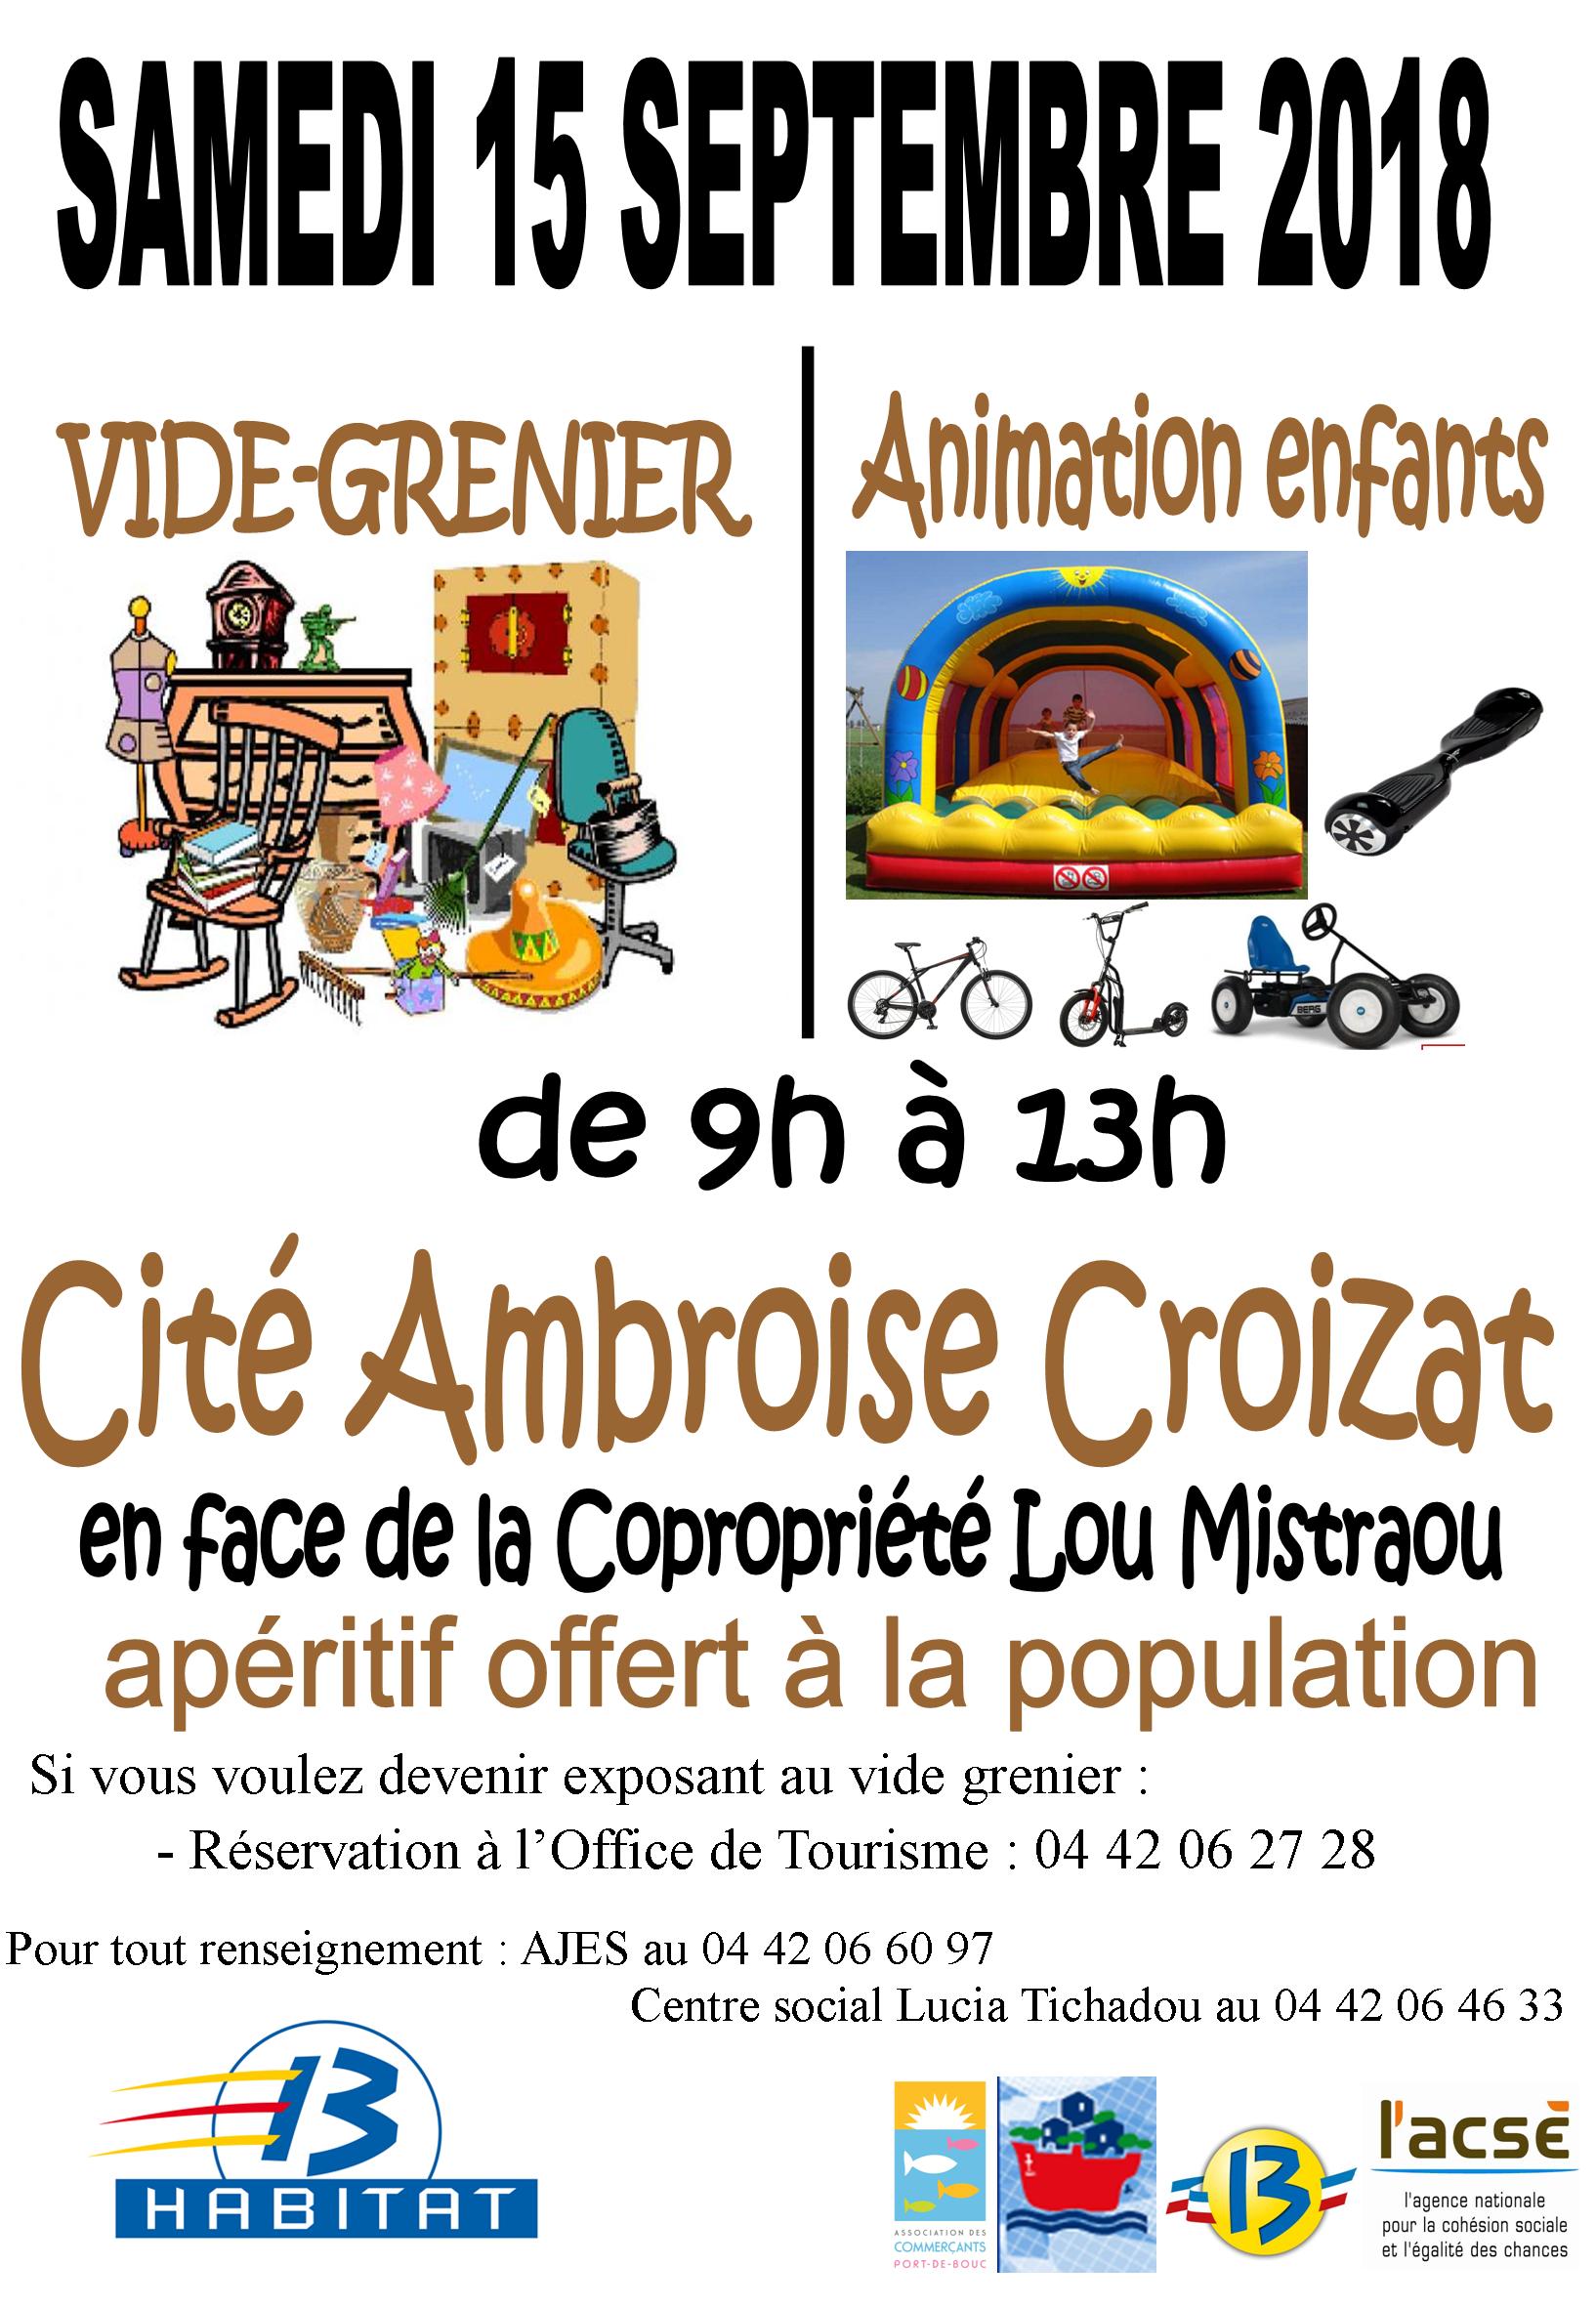 Vide grenier d'Ambroise Croizat à Port-de-Bouc / Samedi 15 septembre